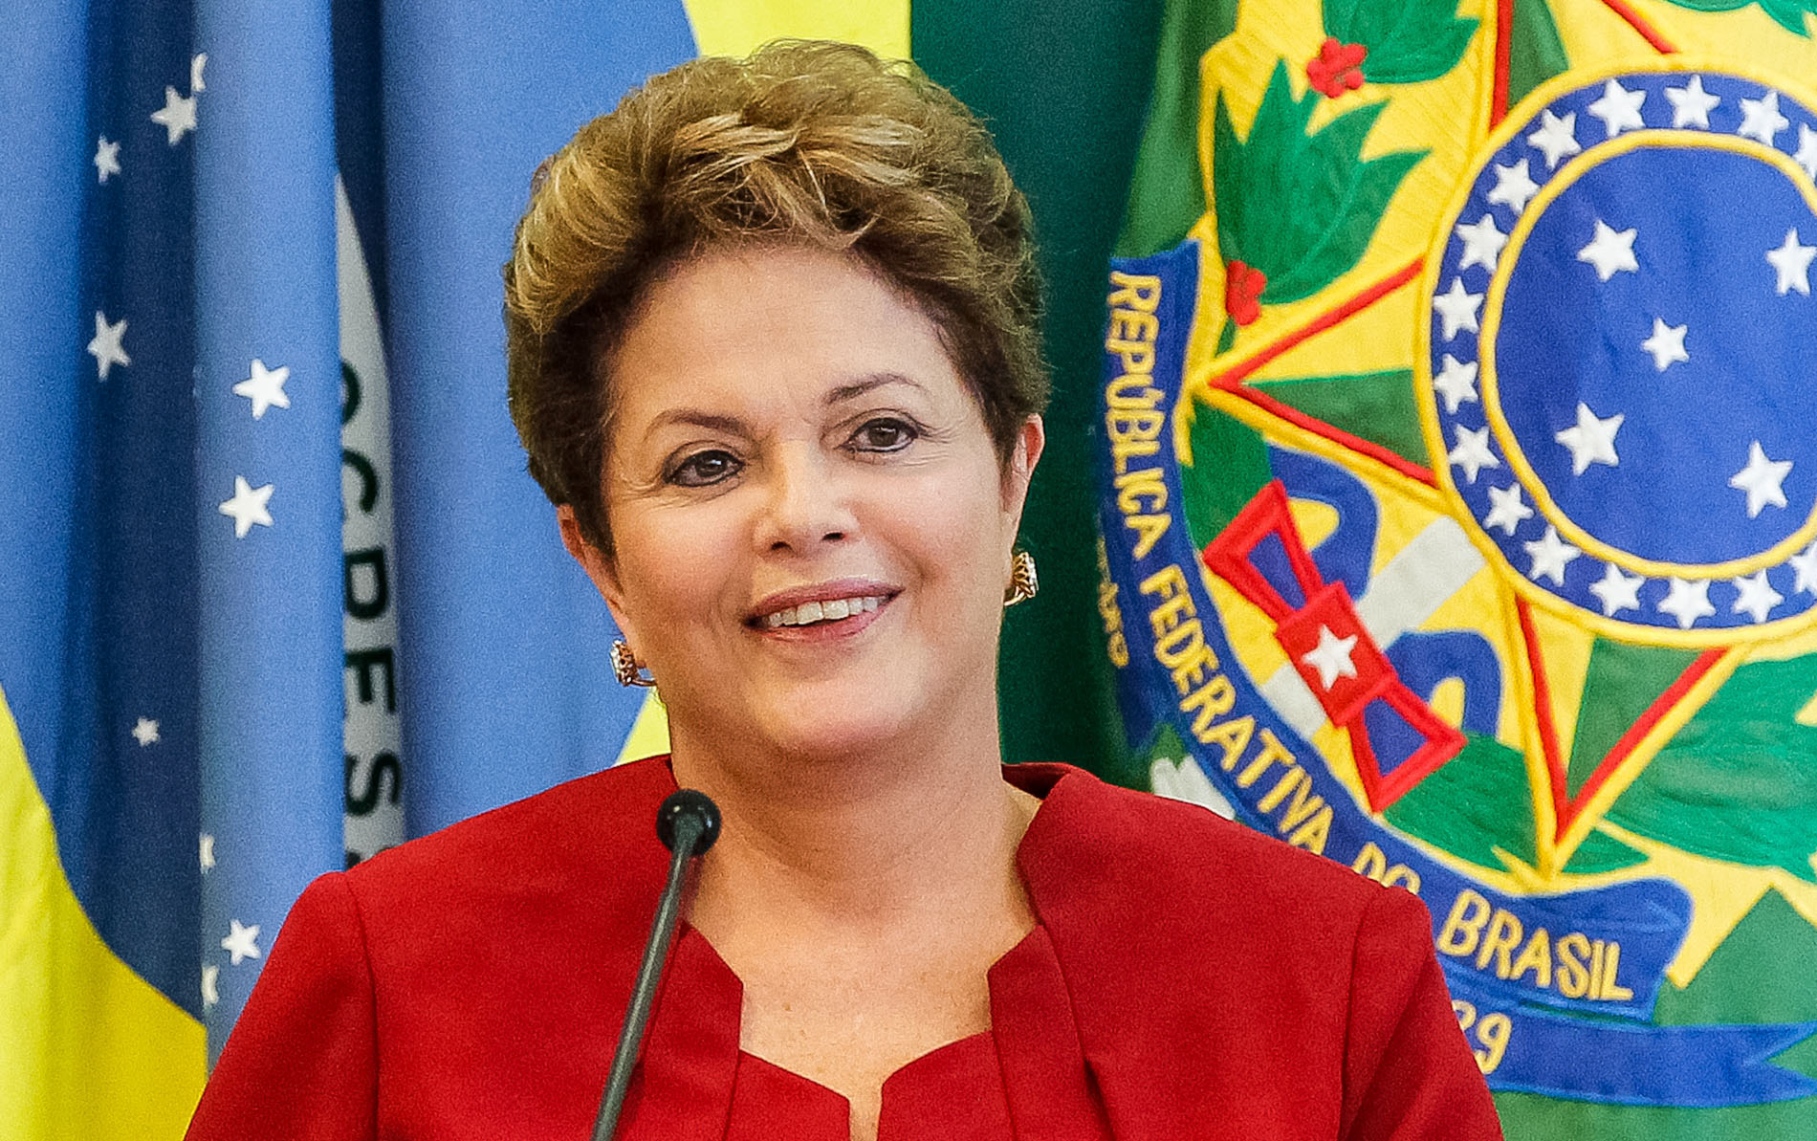 رئيسة البرازيل تقول إنها "لن تستقيل" وتحث المحكمة العليا على النزاهة